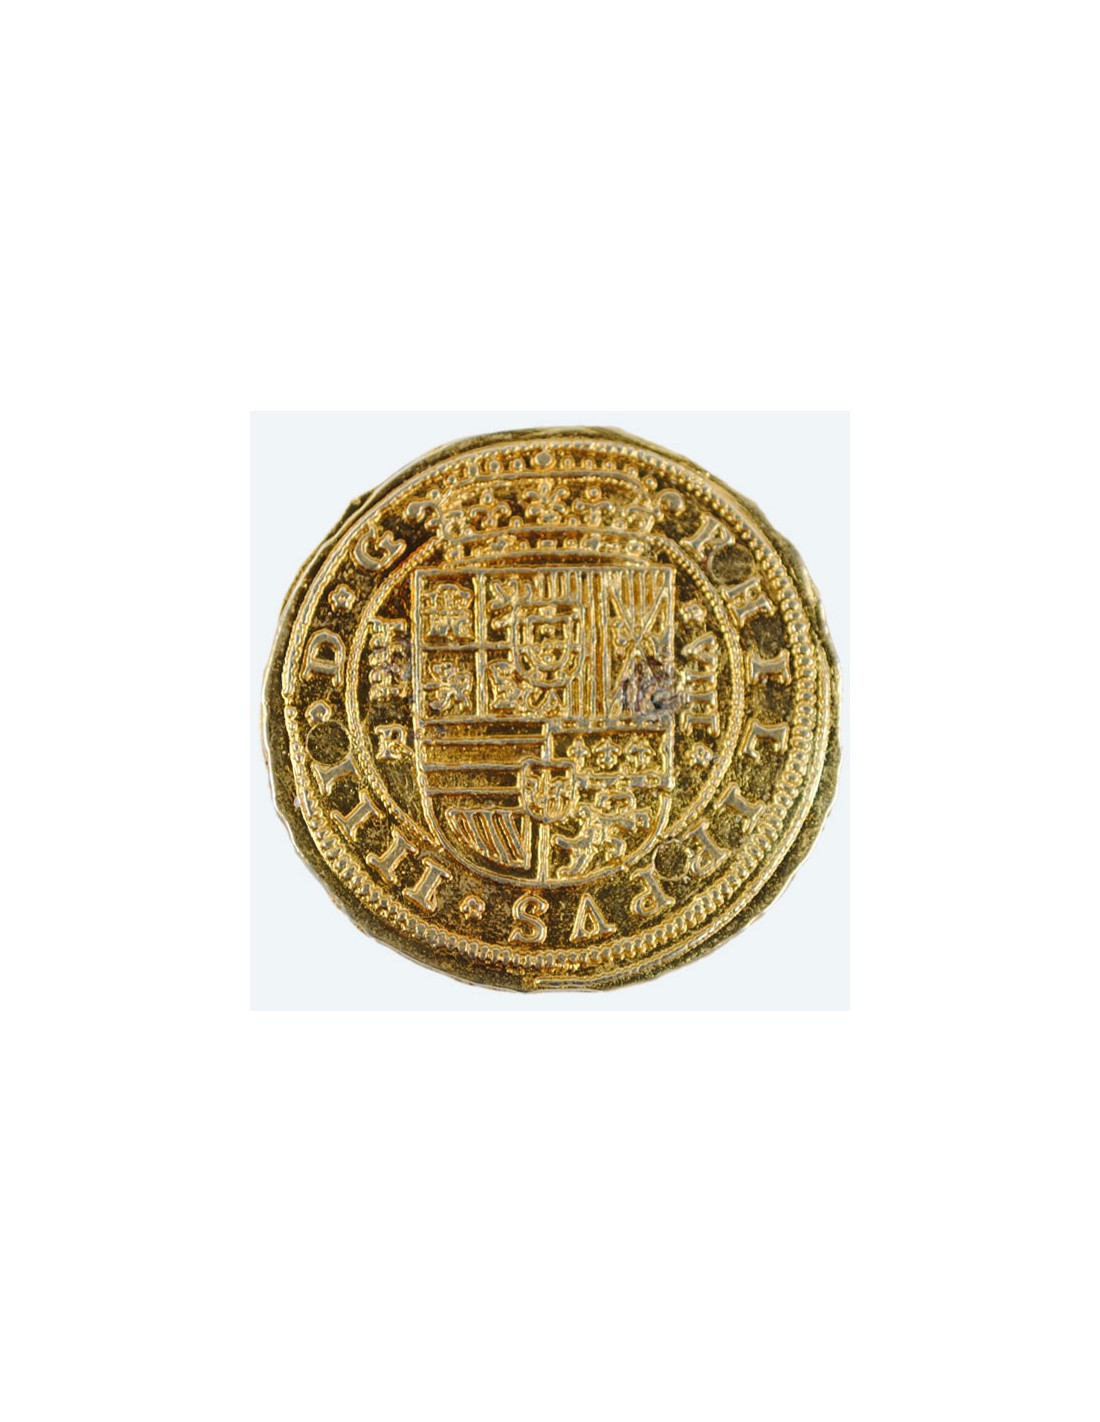 Expositor cuadrado para navajas o monedas de 7 x 7 cm. ⚔️ Tienda-Medieval